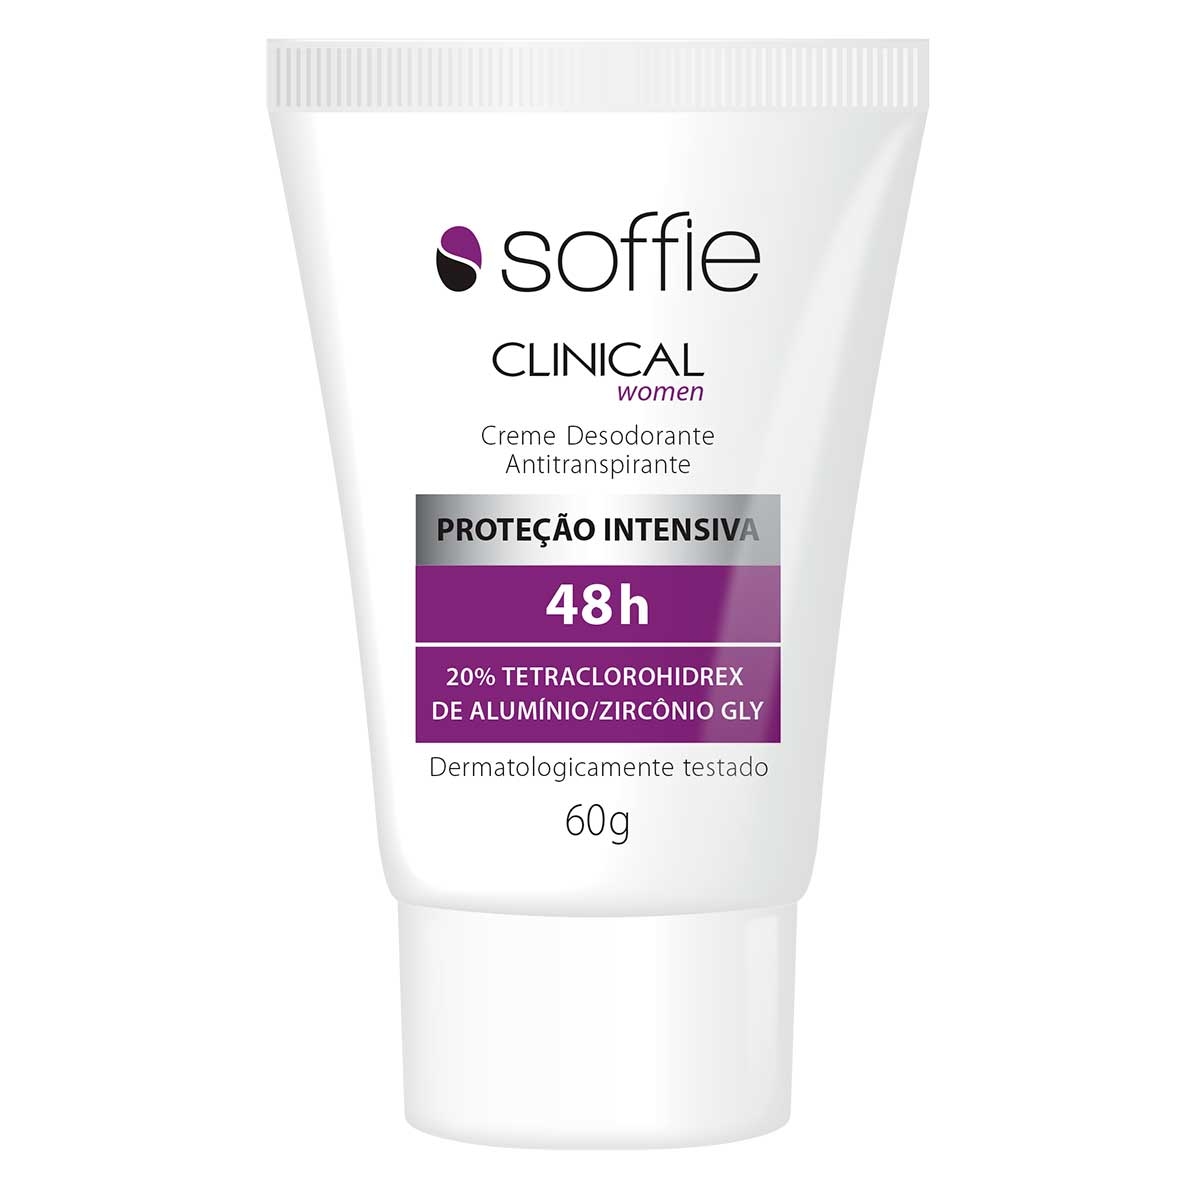 Creme Desodorante Antitranspirante Soffie Clinical Women 48h com 60g 60g